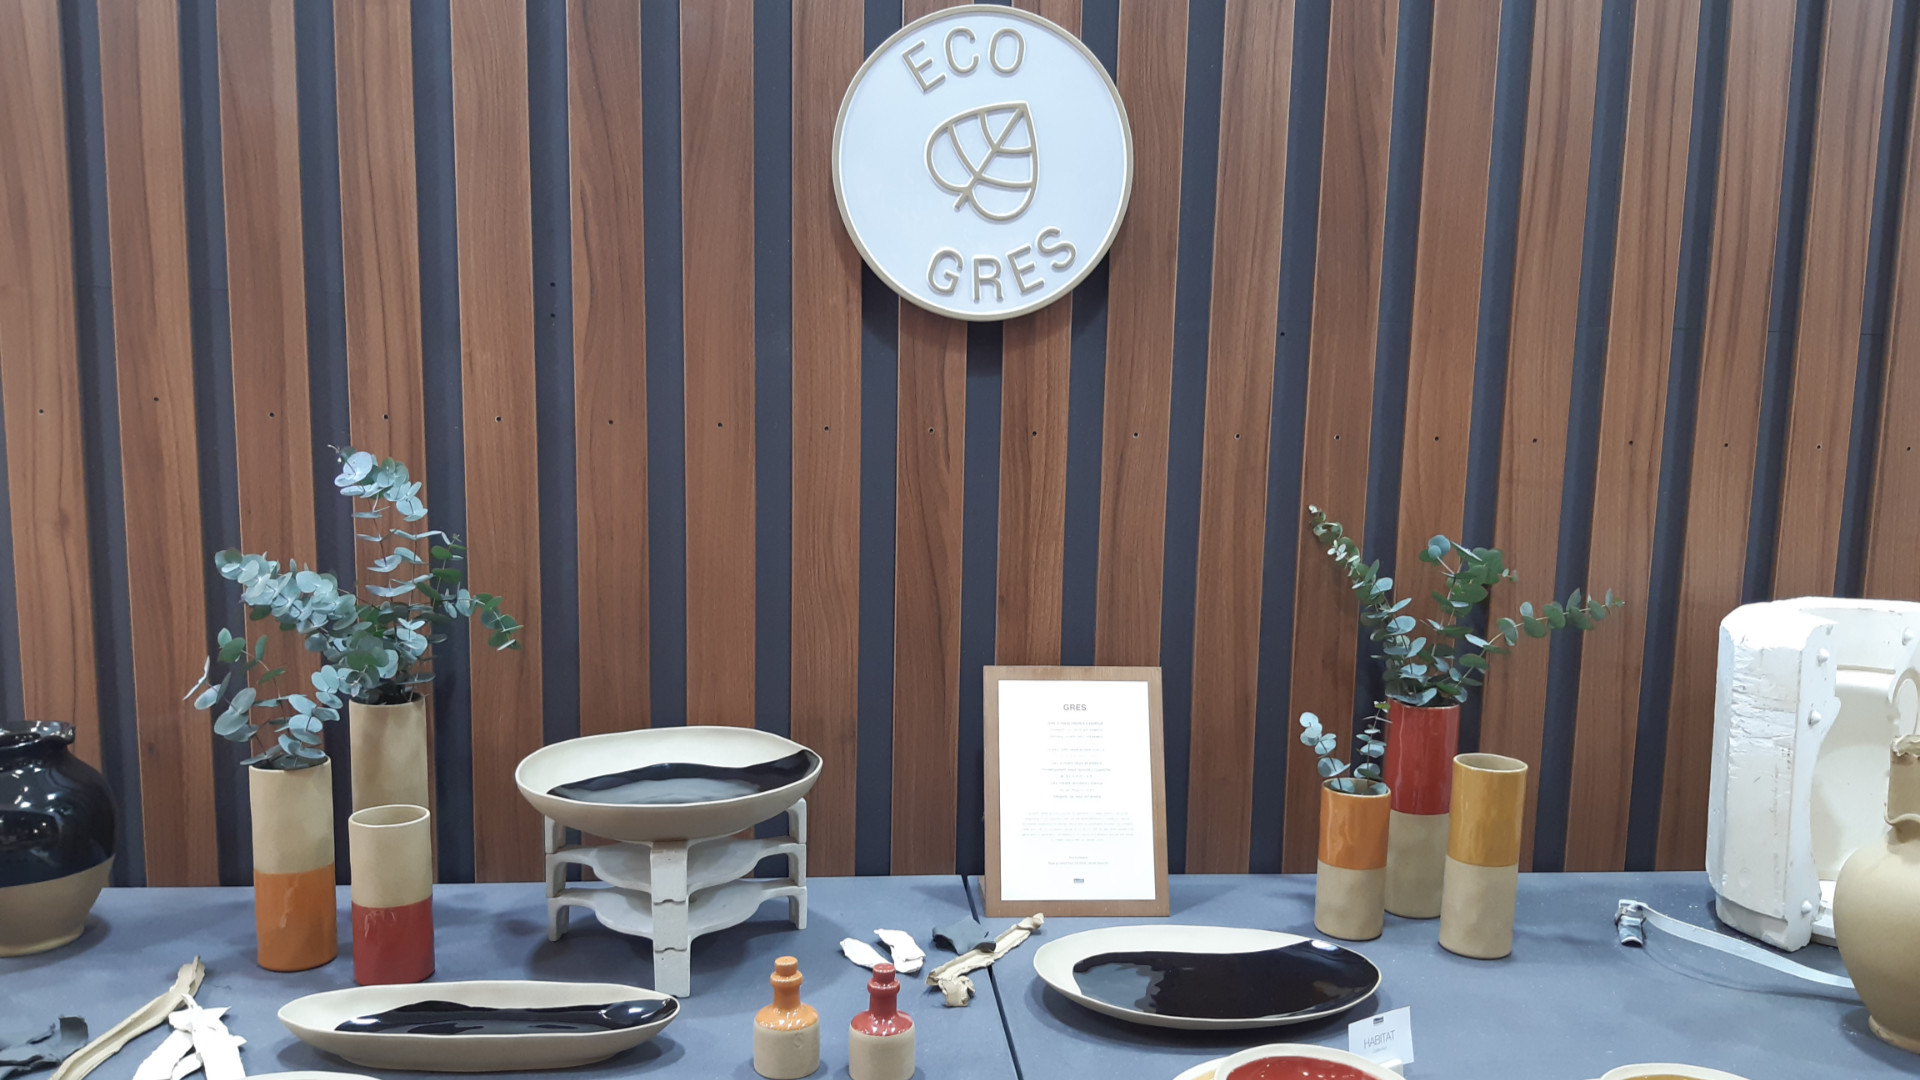 Alle Kollektionen mit dem Ecogres®-Garantiesiegel von Grestel werden aus recycelten Materialien gefertigt.  Foto: Beate Schraml